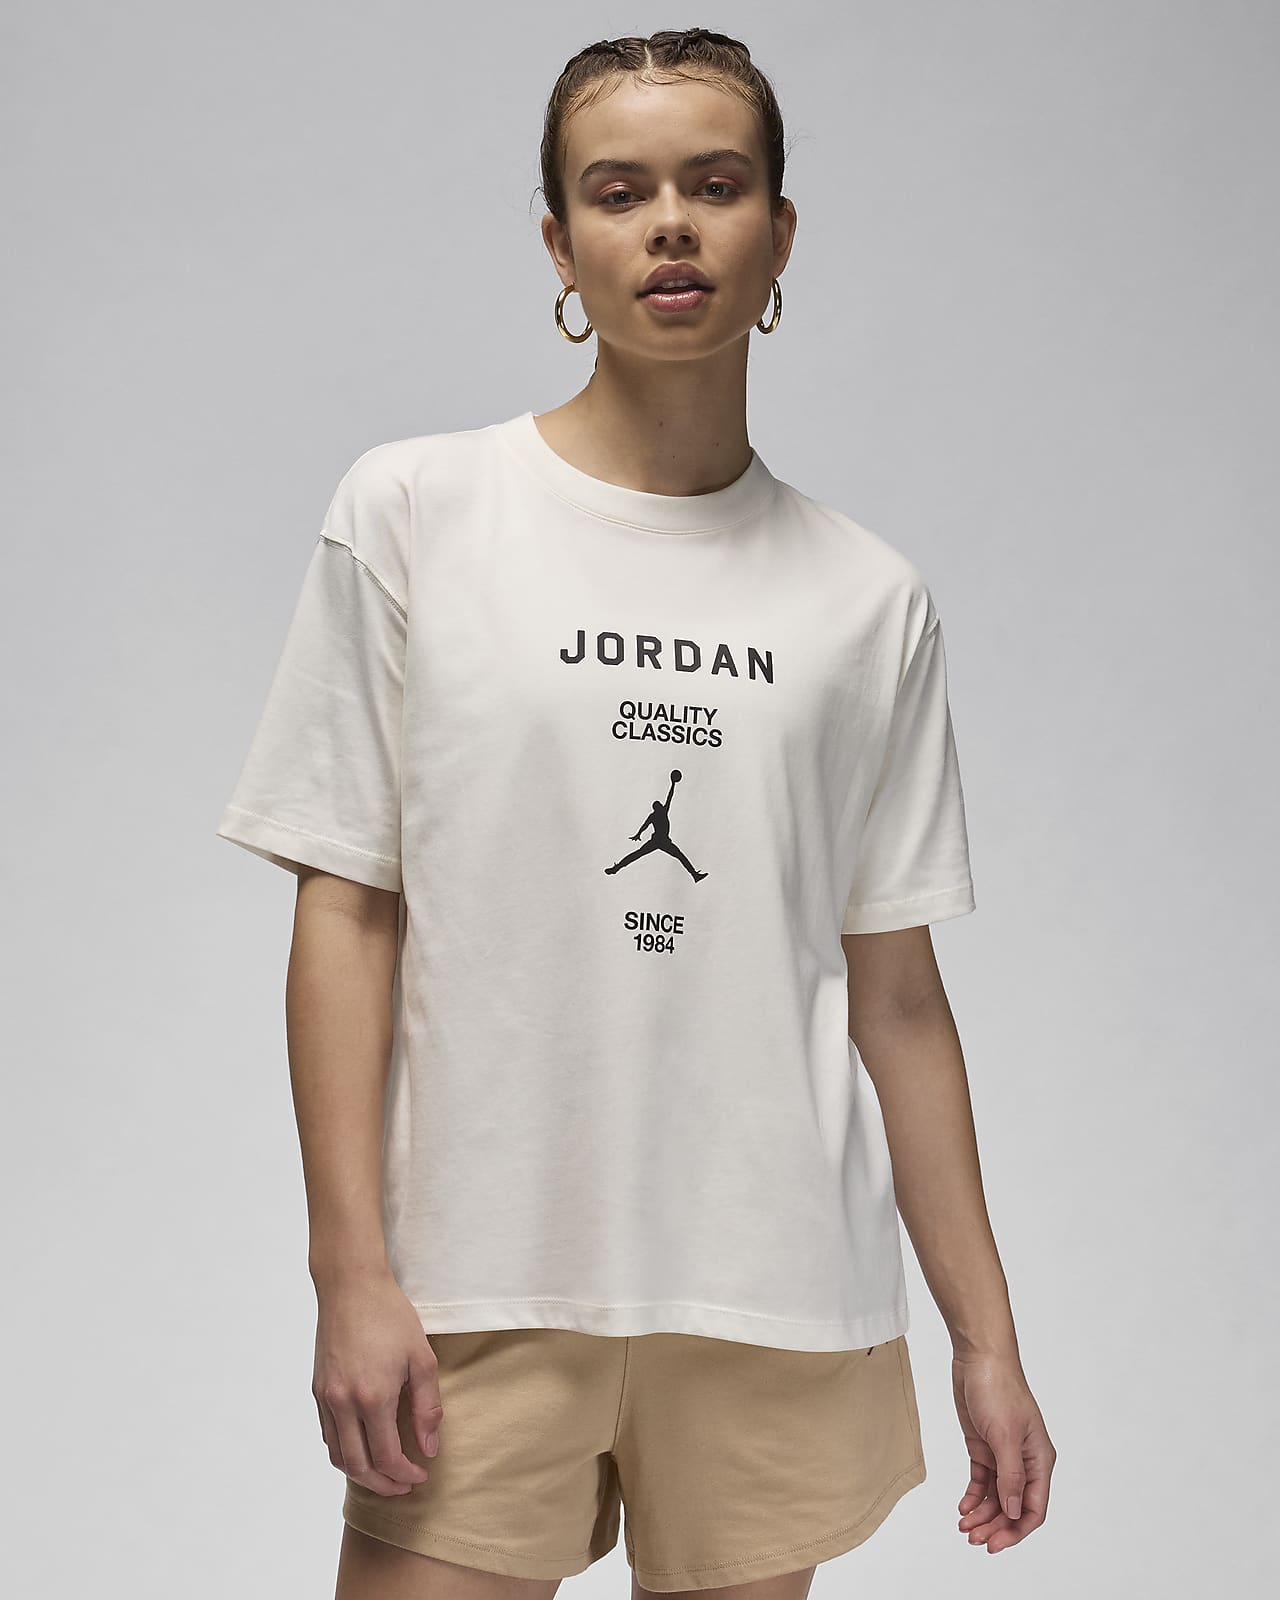 Jordan Women's Girlfriend T-Shirt